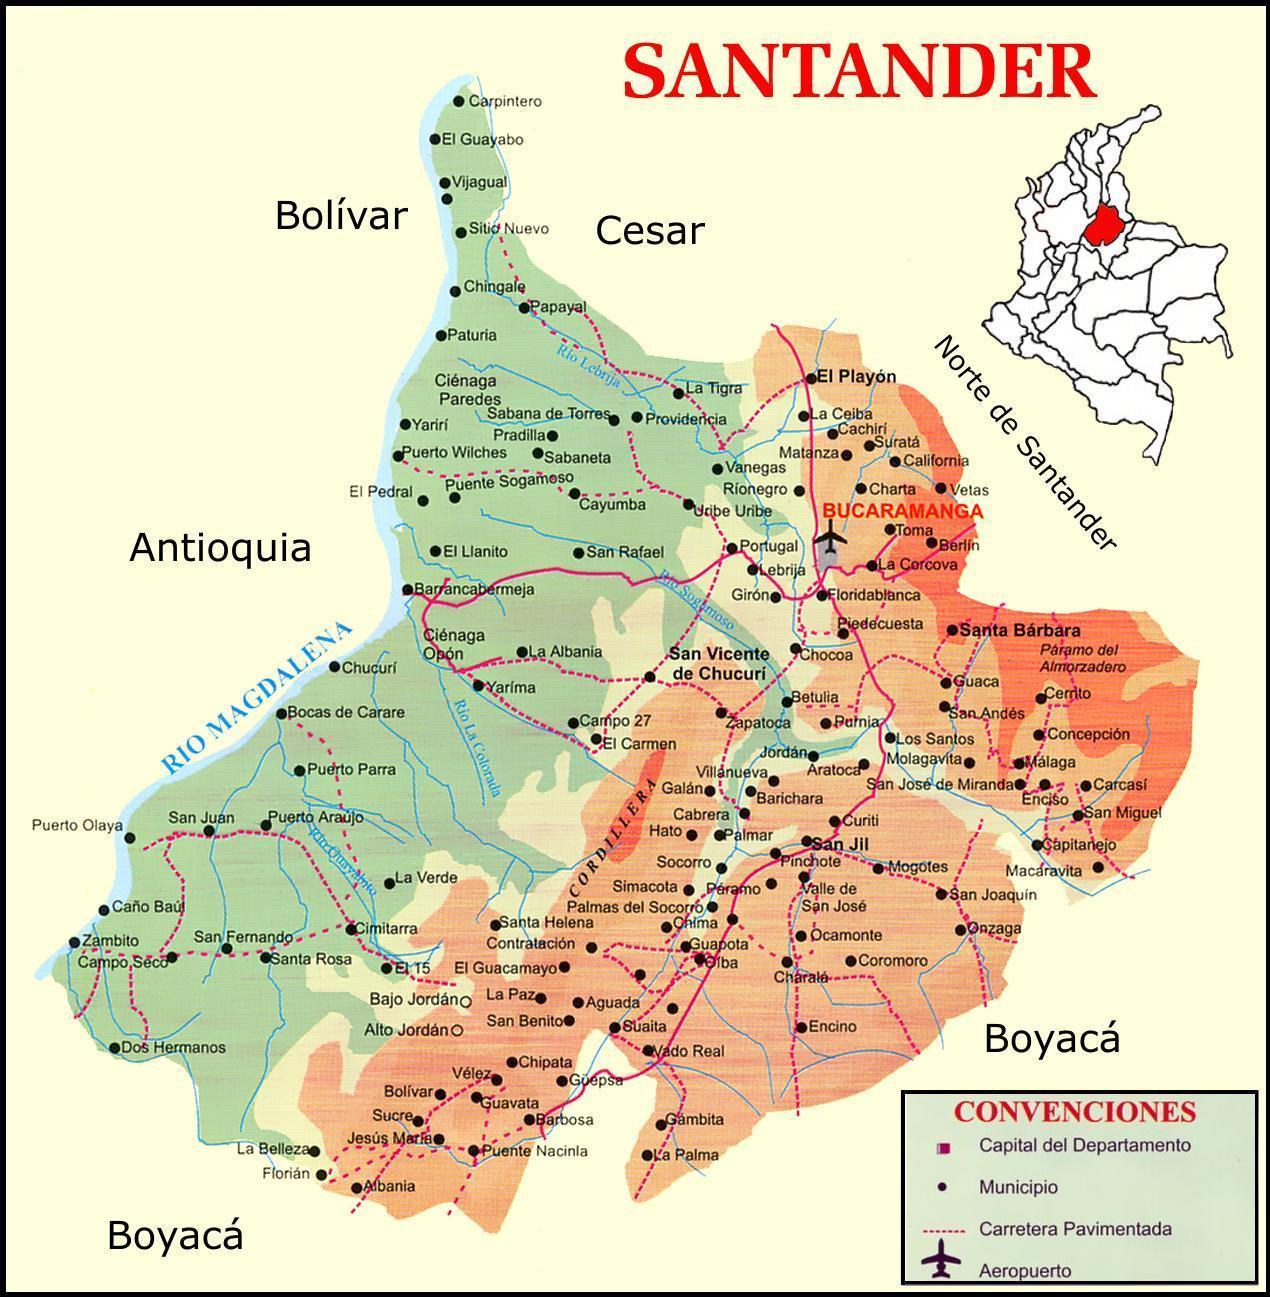 Santander road map - Full size